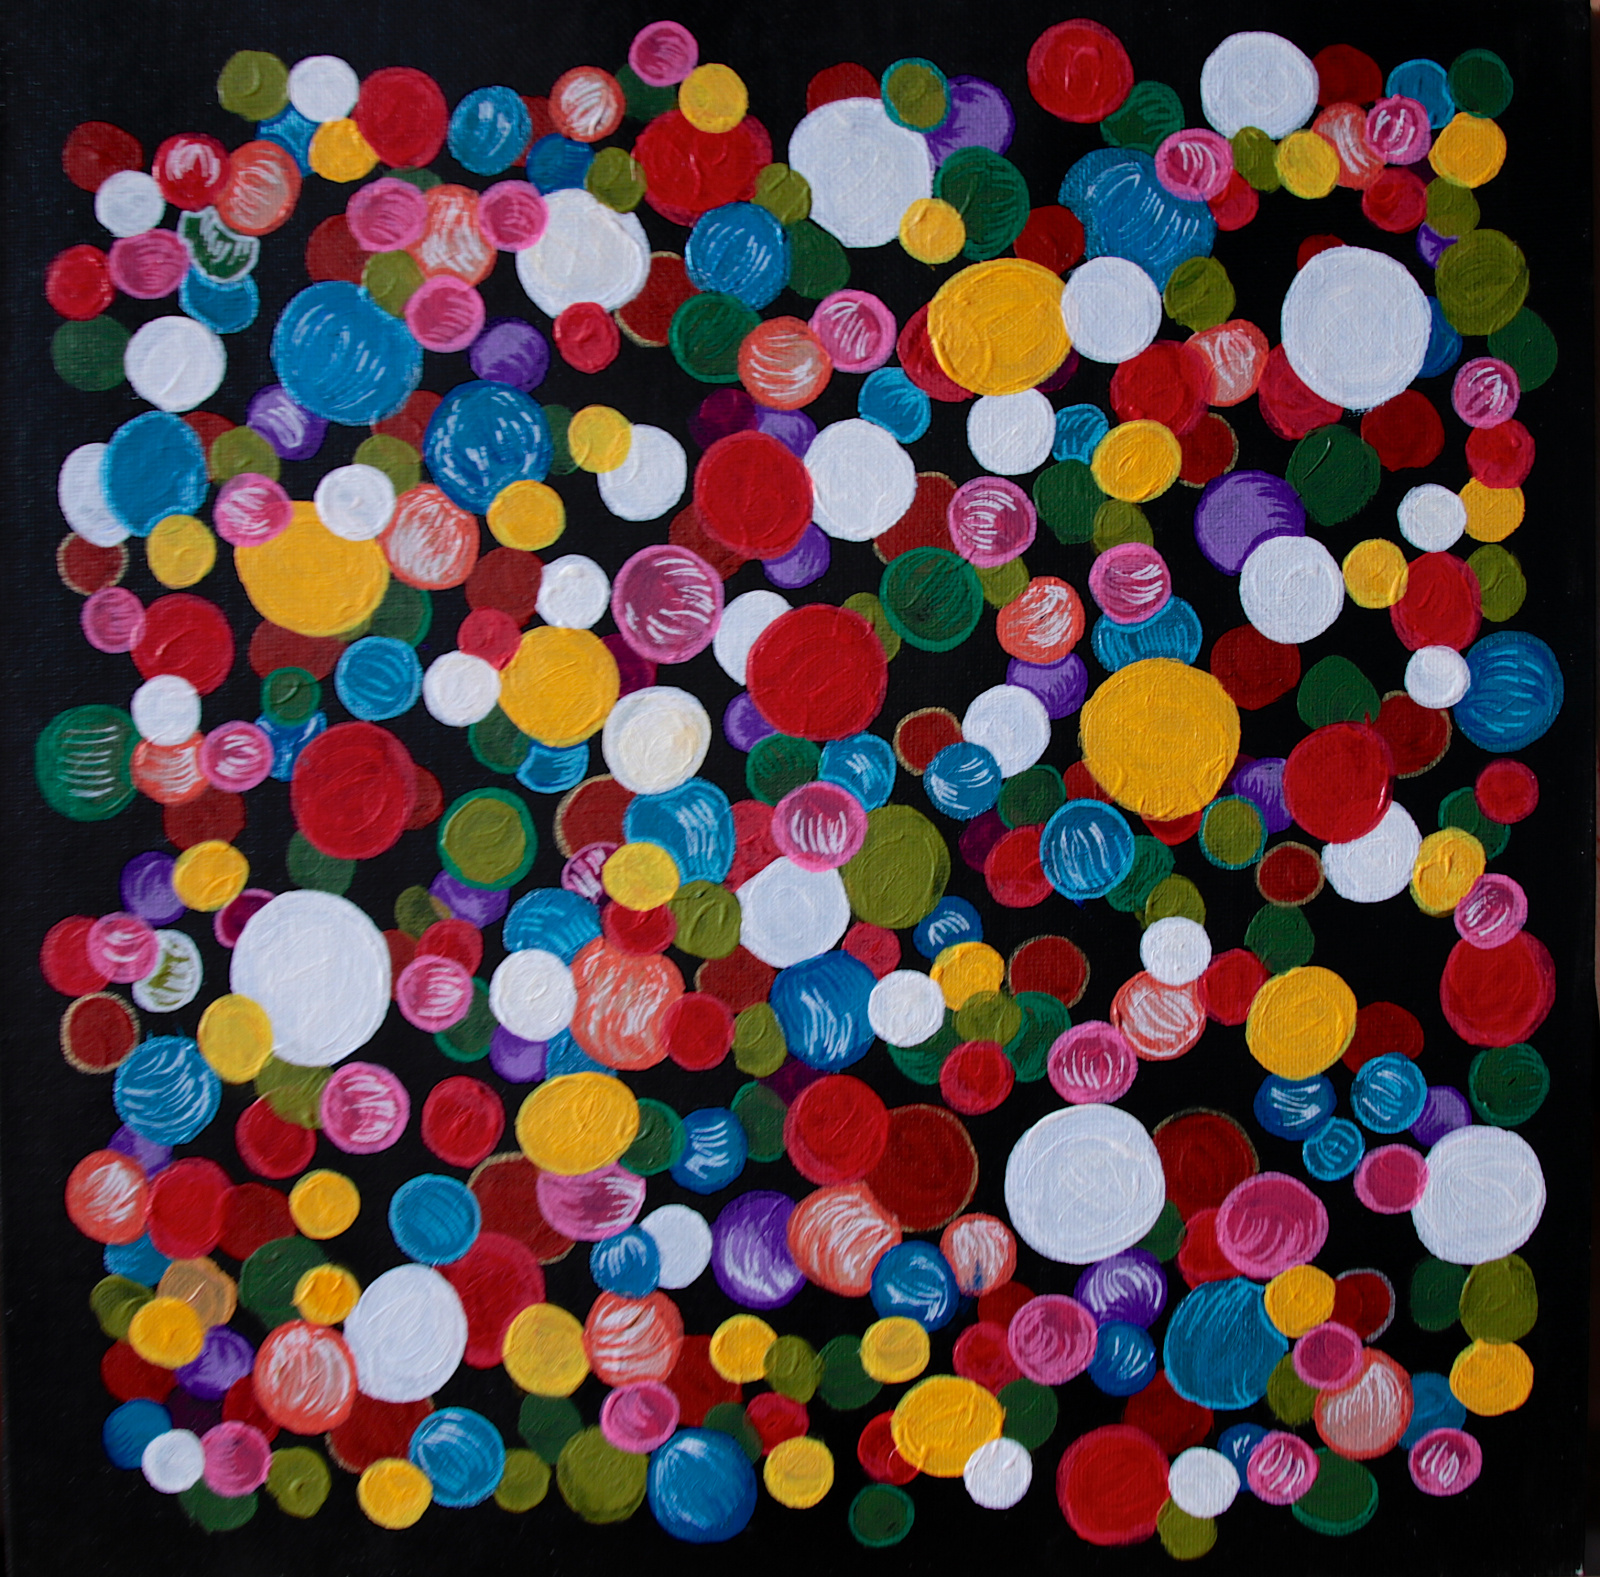 Luftblasen - Farbige Blasen auf einem schwarzen Hintergrund - 30x30cm